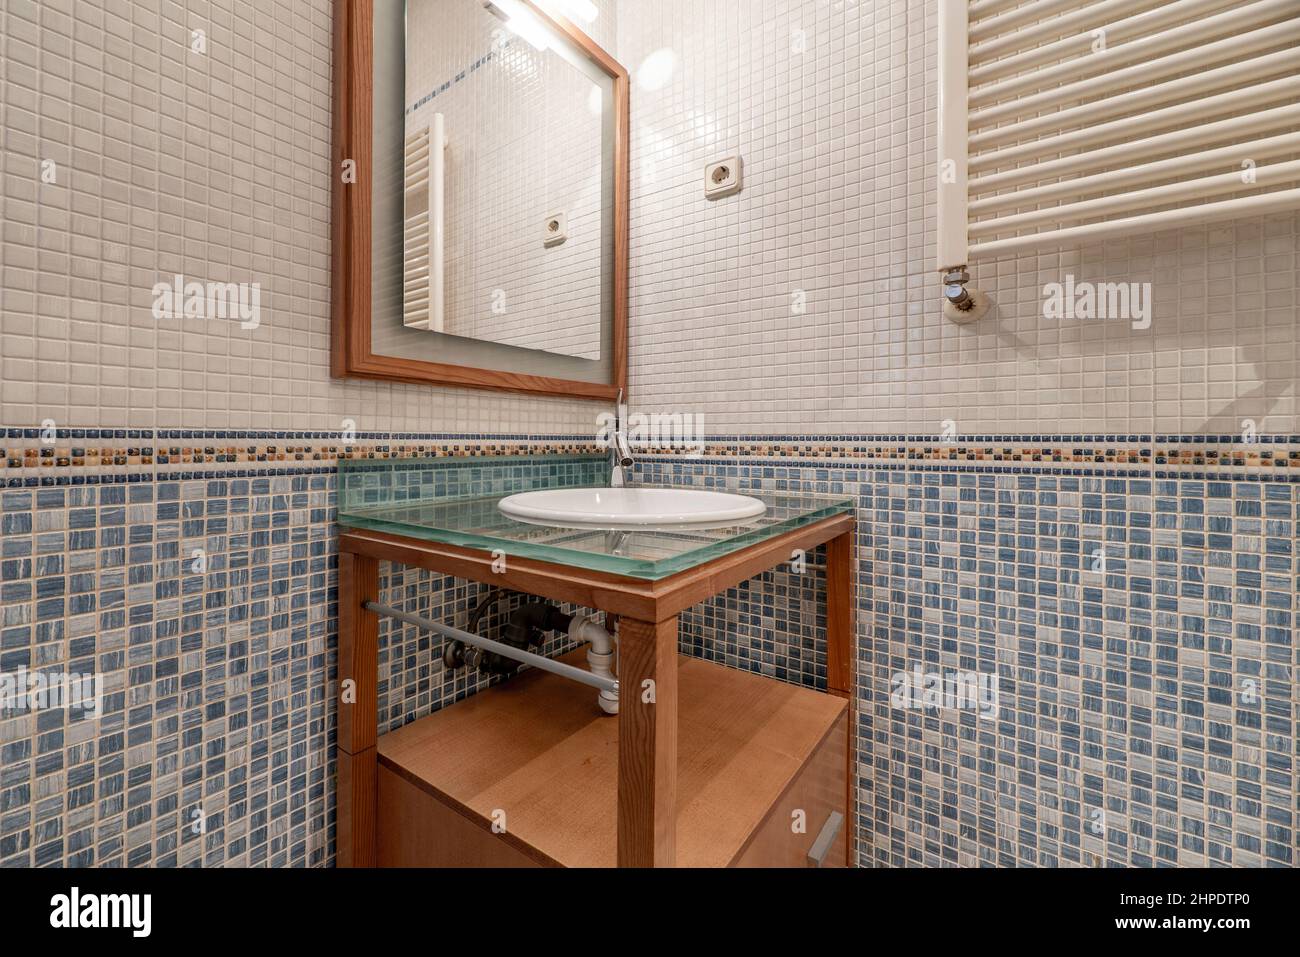 Toilettes avec armoire en merisier avec dessus en verre, radiateur mural, miroir carré et carreaux de mosaïque Banque D'Images